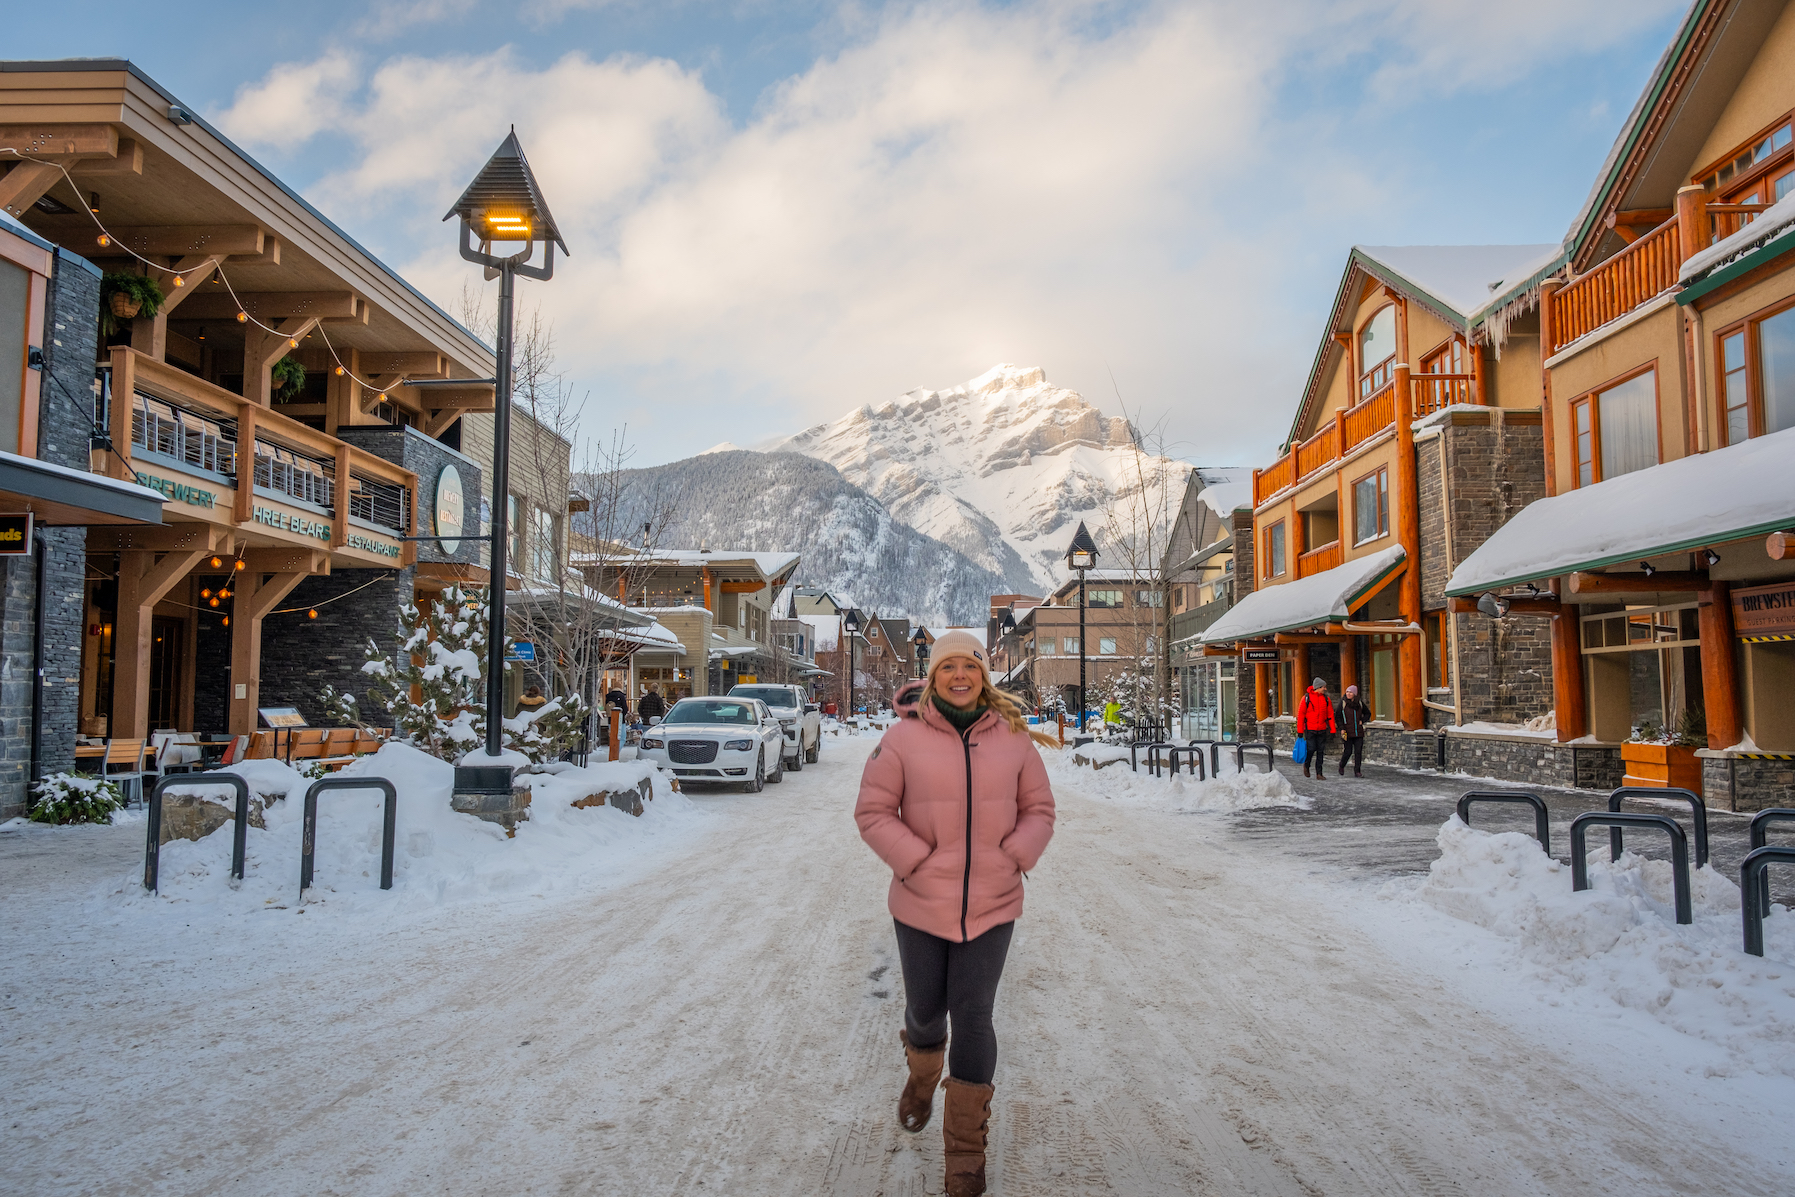 Strolling Bear Street in Banff in March